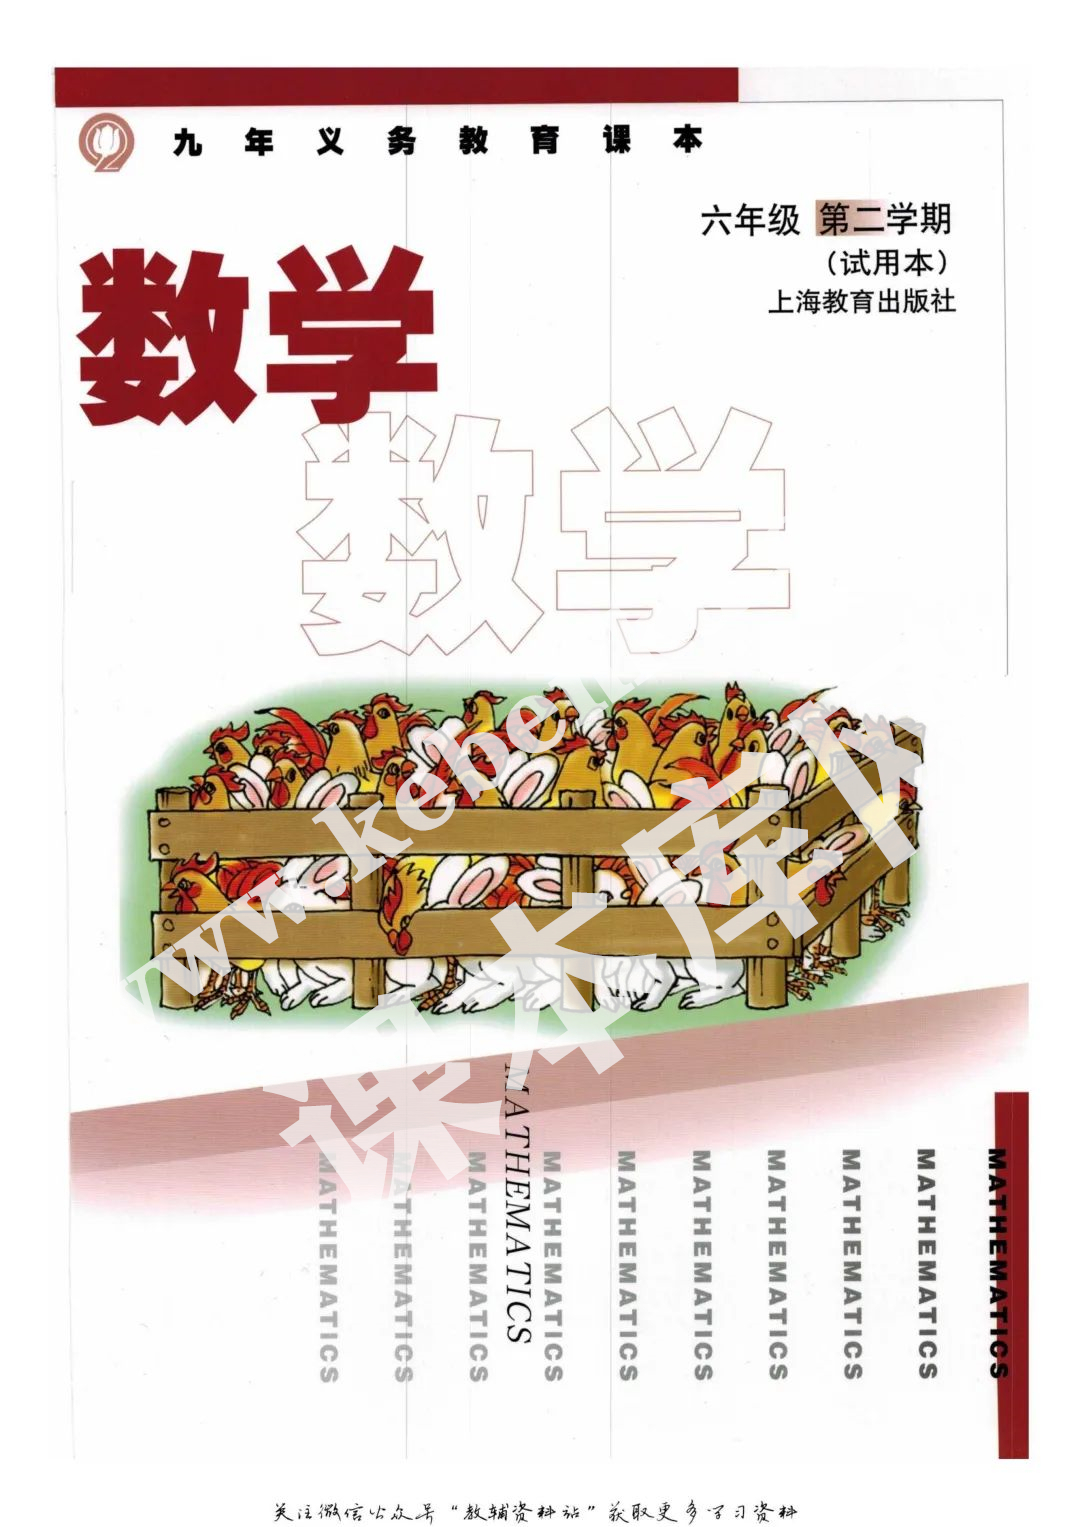 上海教育出版社九年義務教育教科書六年級數學下冊電子課本